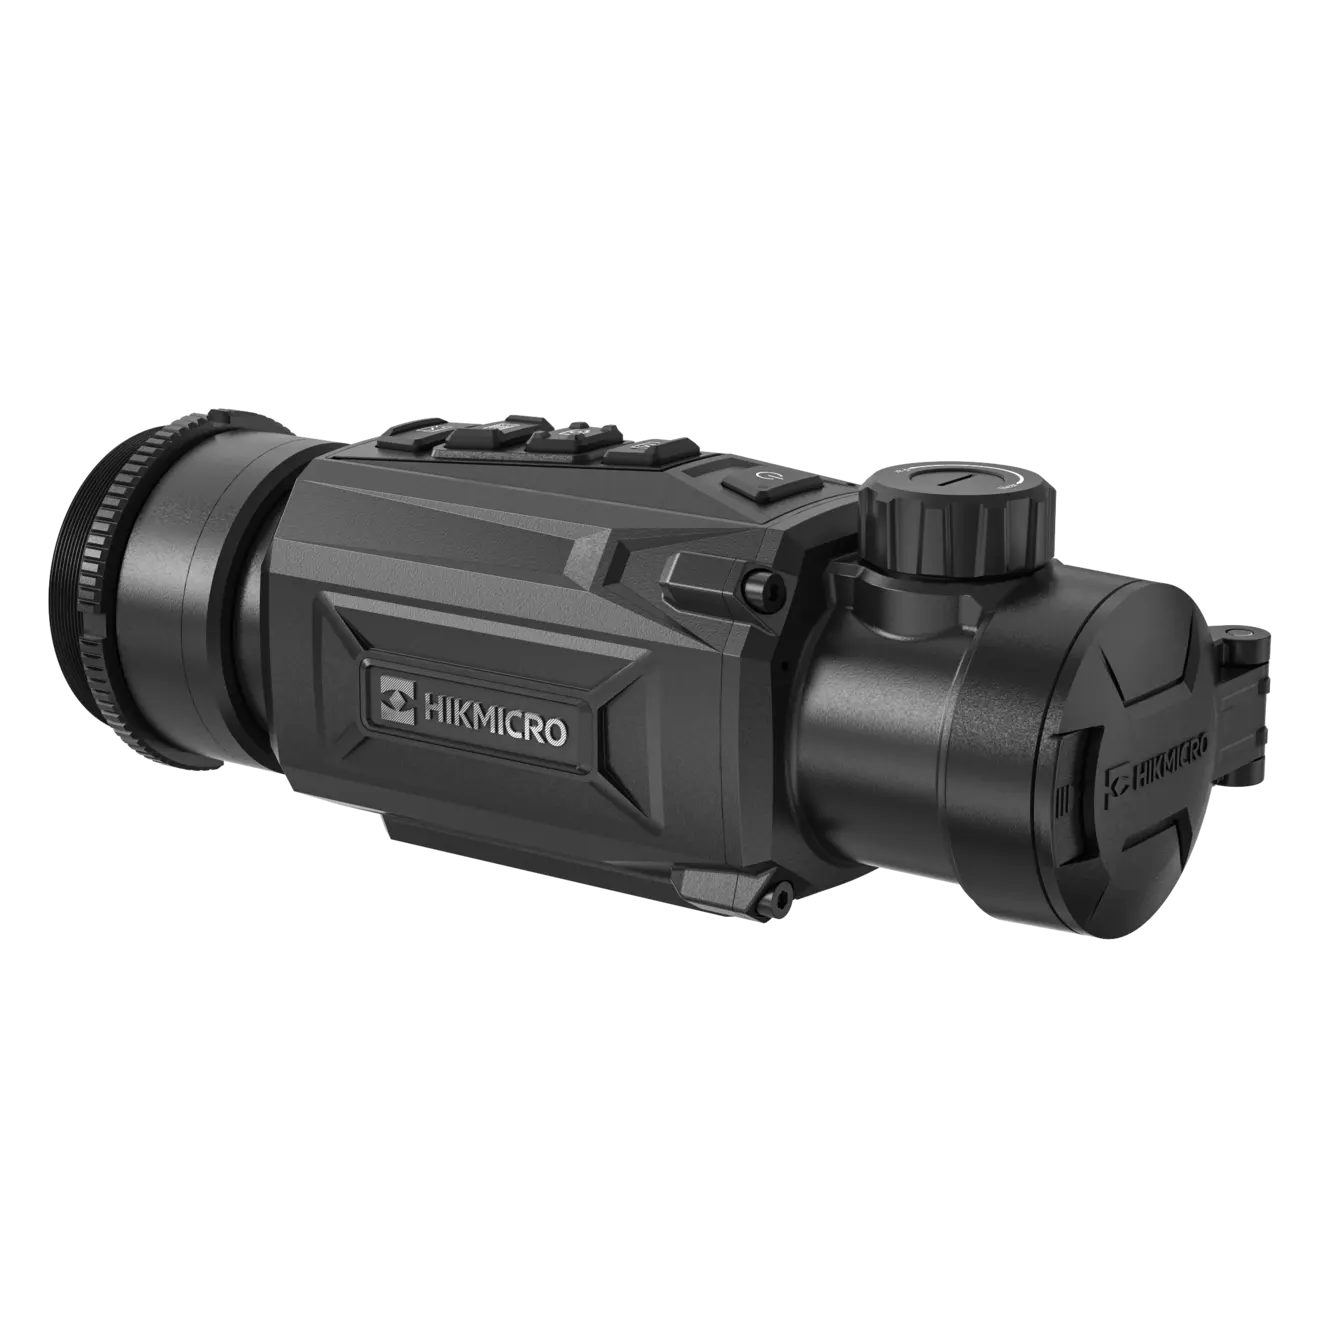 Hikmicro Thunder 2.0 TH35PC portée thermique caméra monoculaire thermique portable détecteur infrarouge Vision thermique de nuit